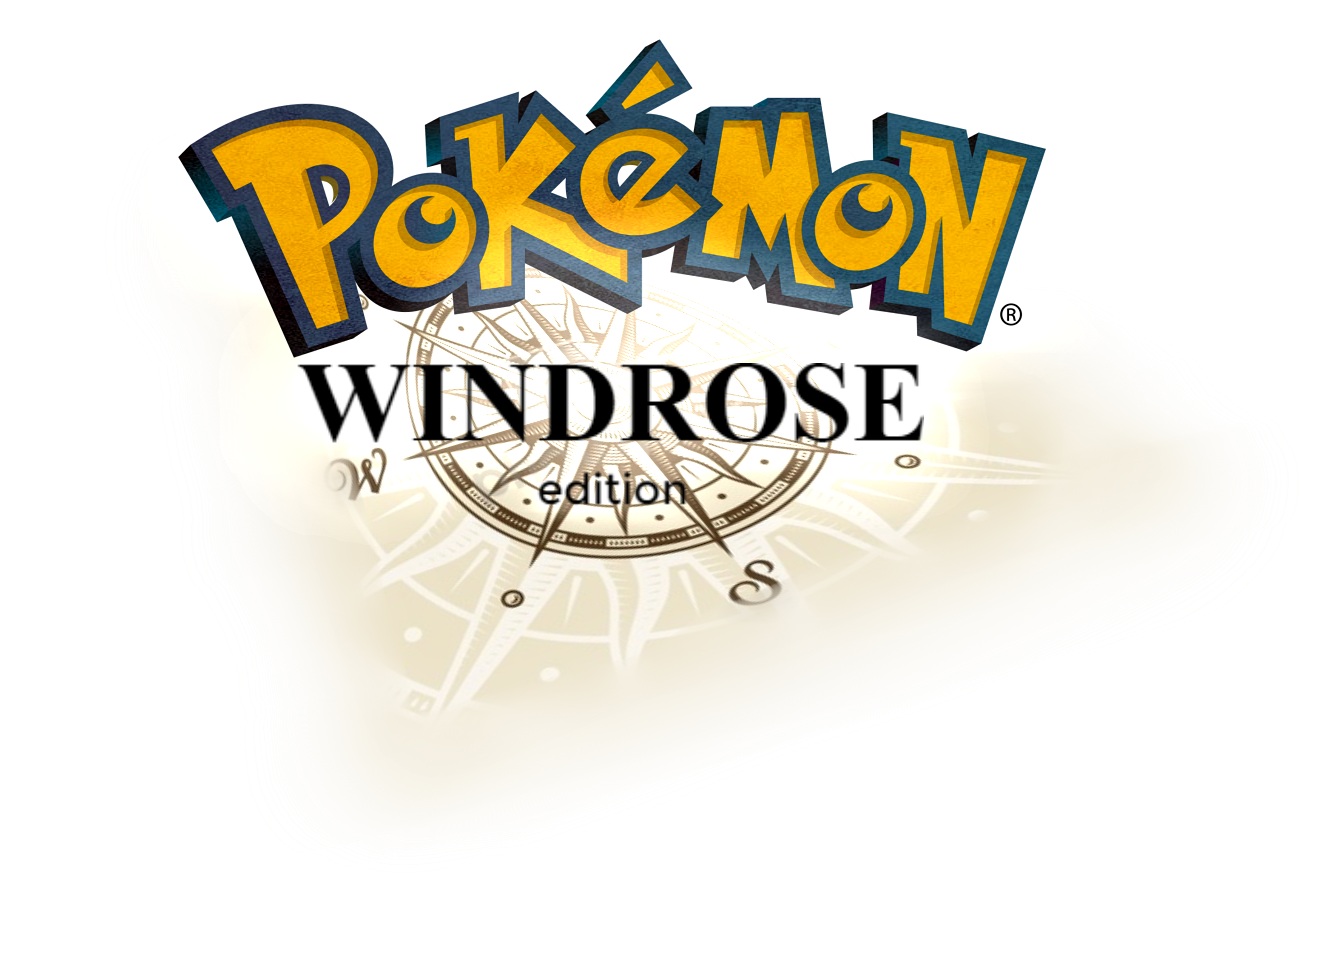 Pokémon Windrose